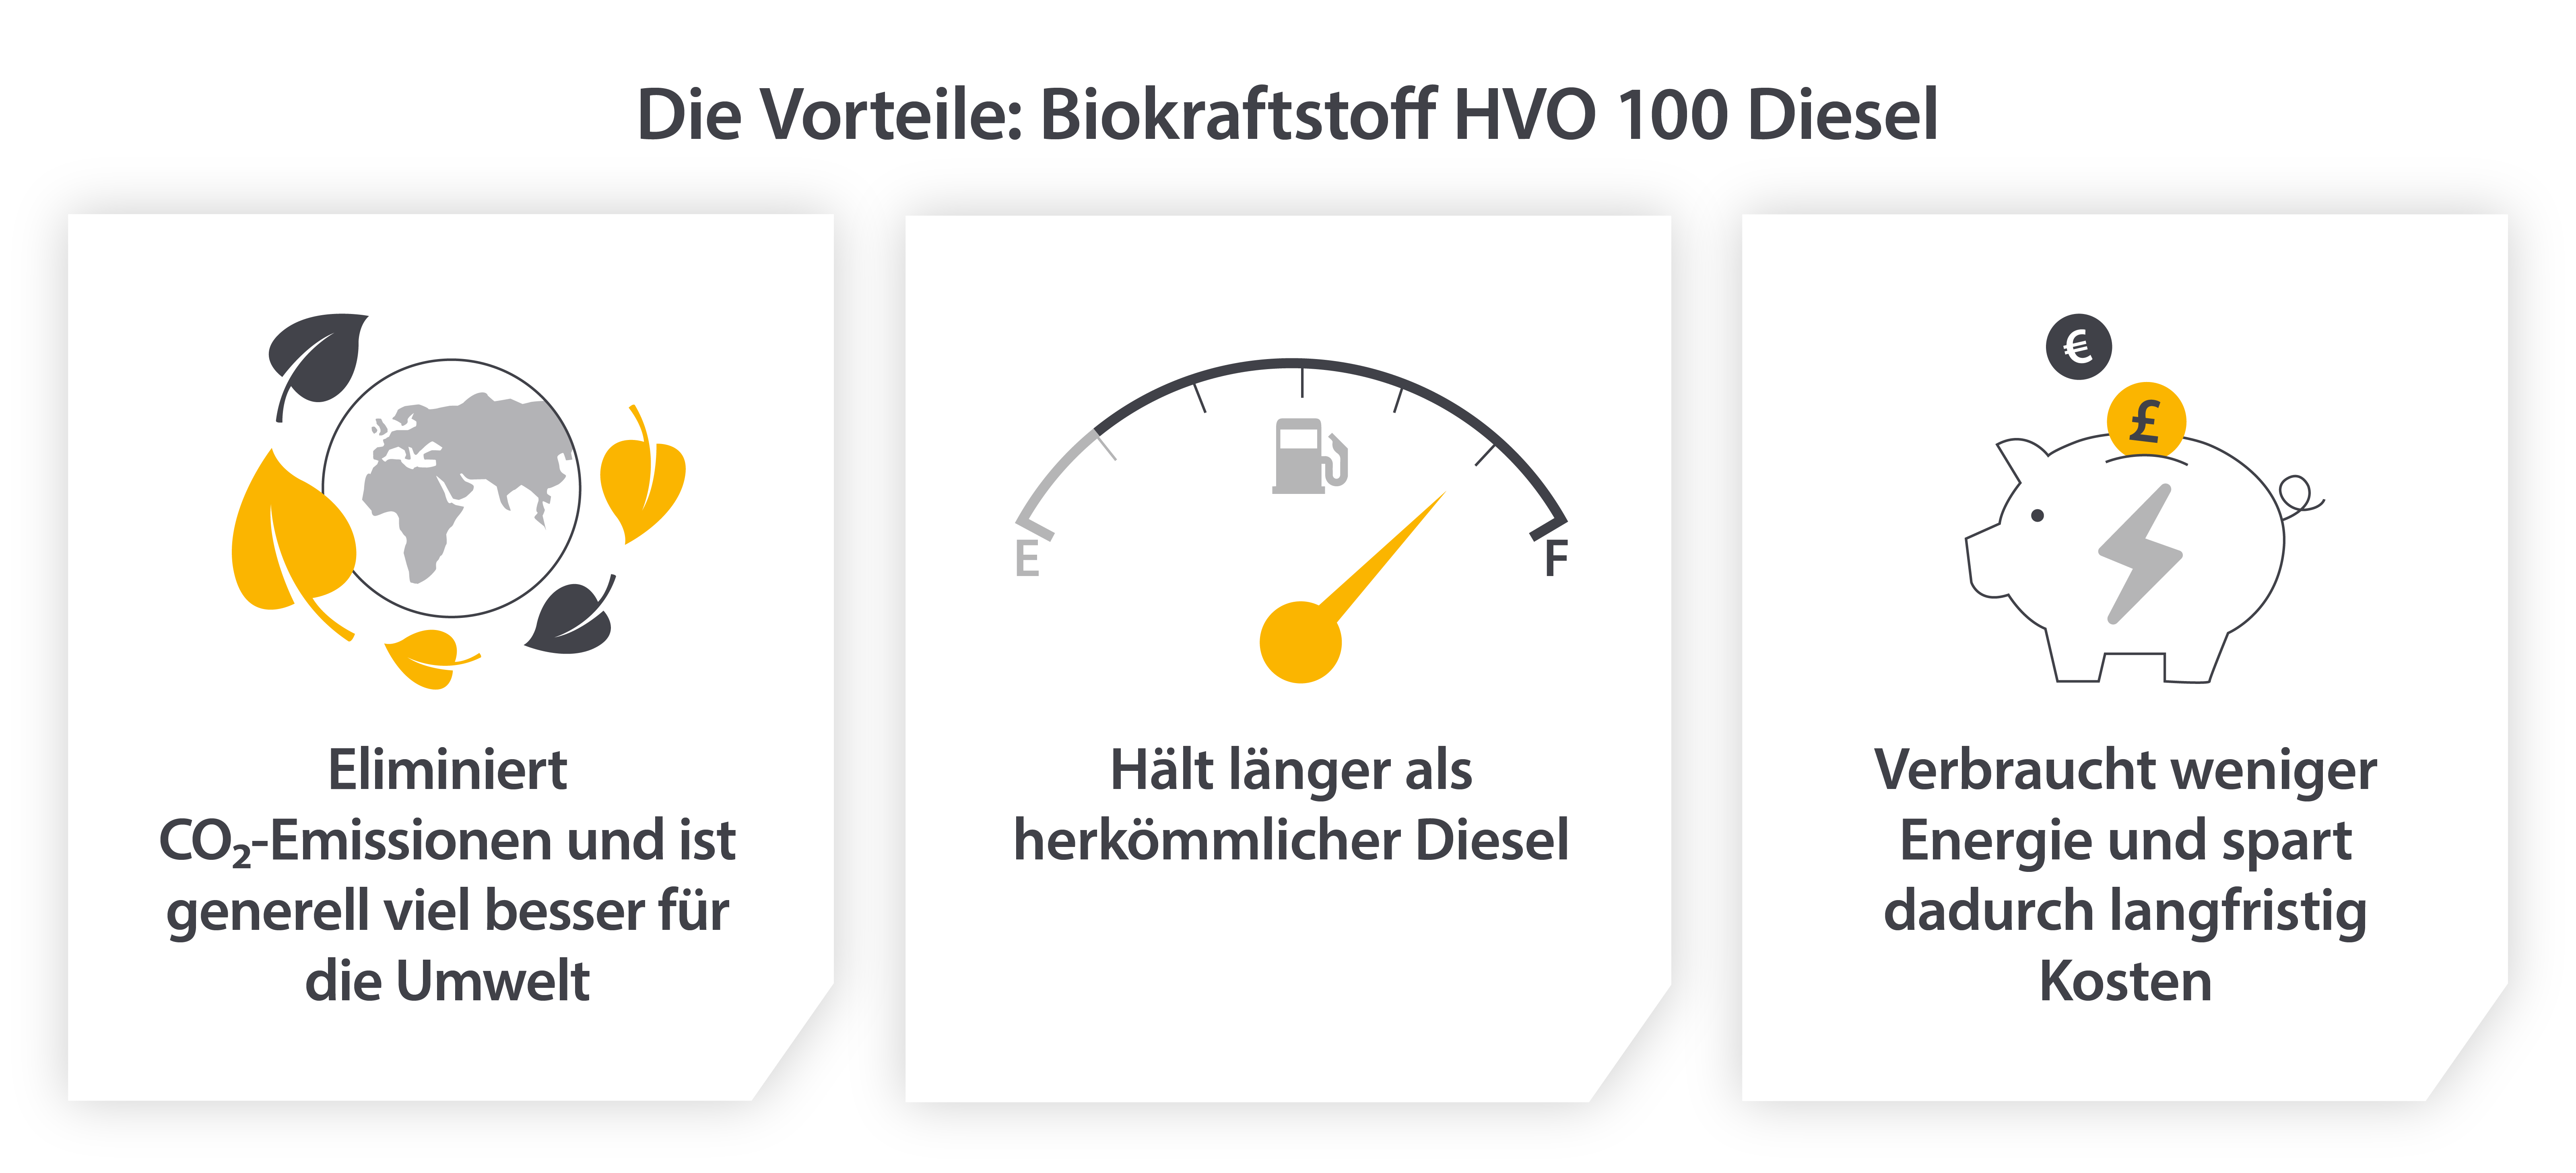 Die Vorteile des Biobrennstoffs HVO 100 gegenüber Diesel